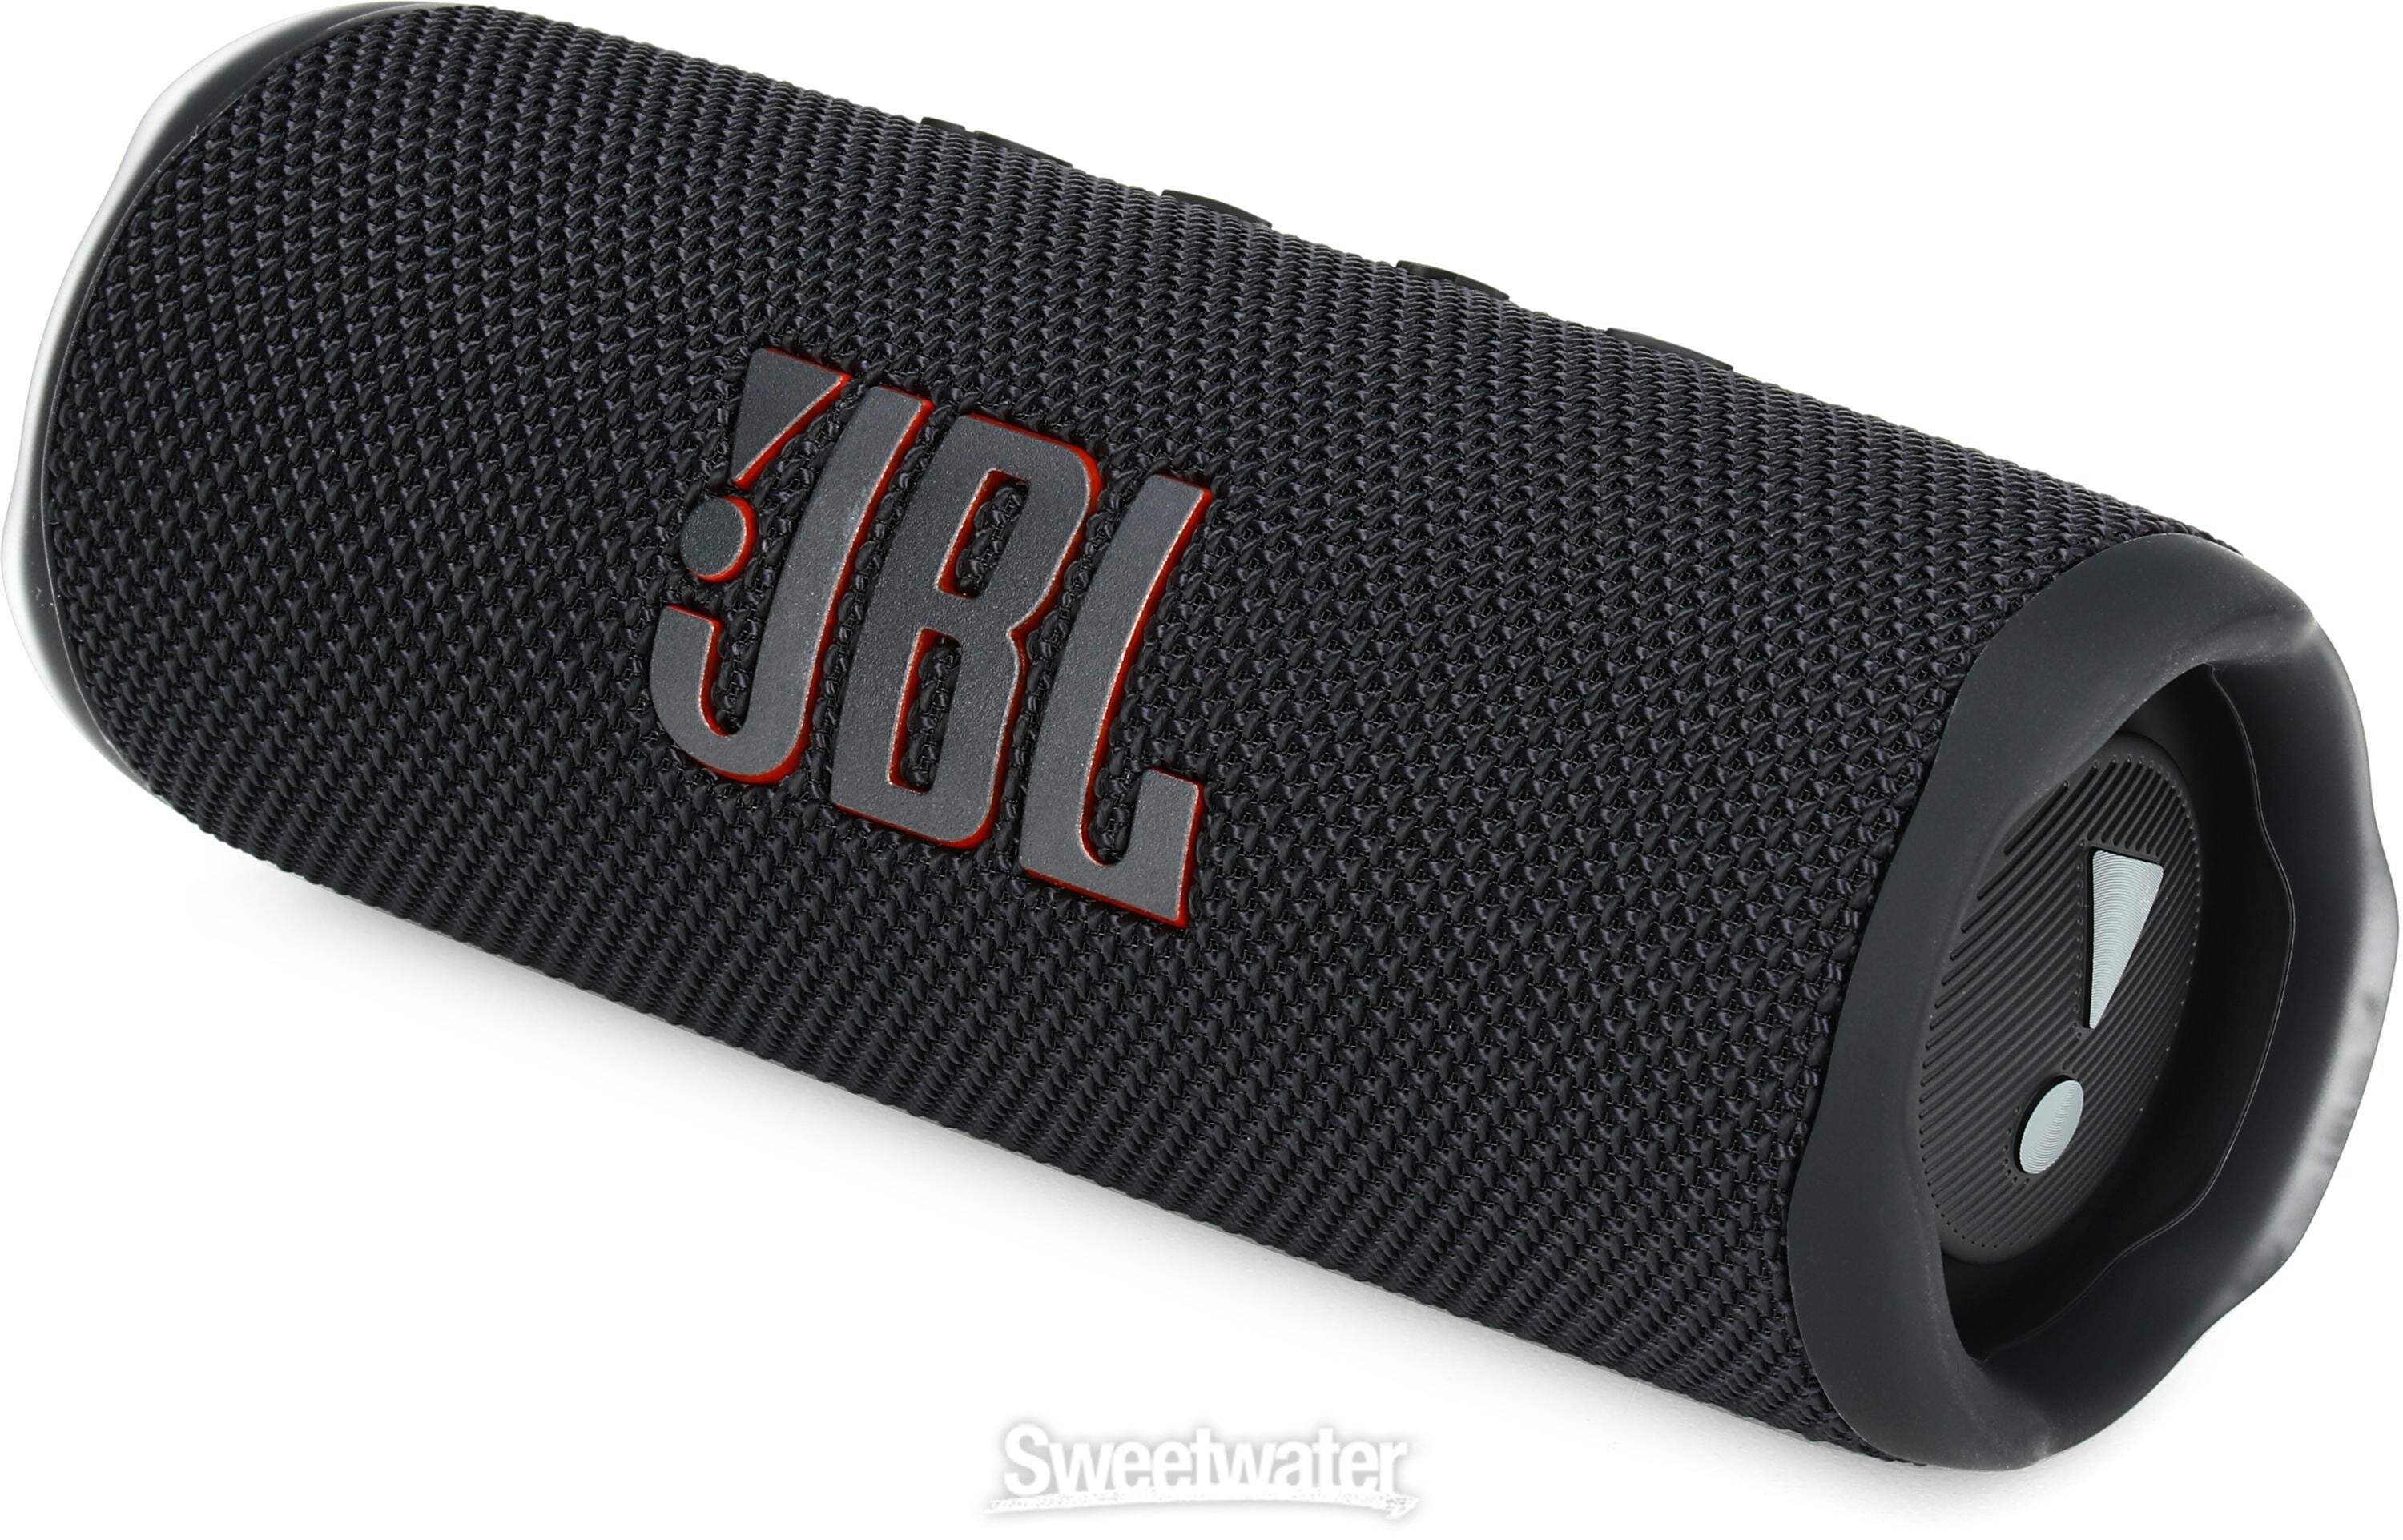 JBL Lifestyle Flip 6 Portable Waterproof Bluetooth Speaker - Black